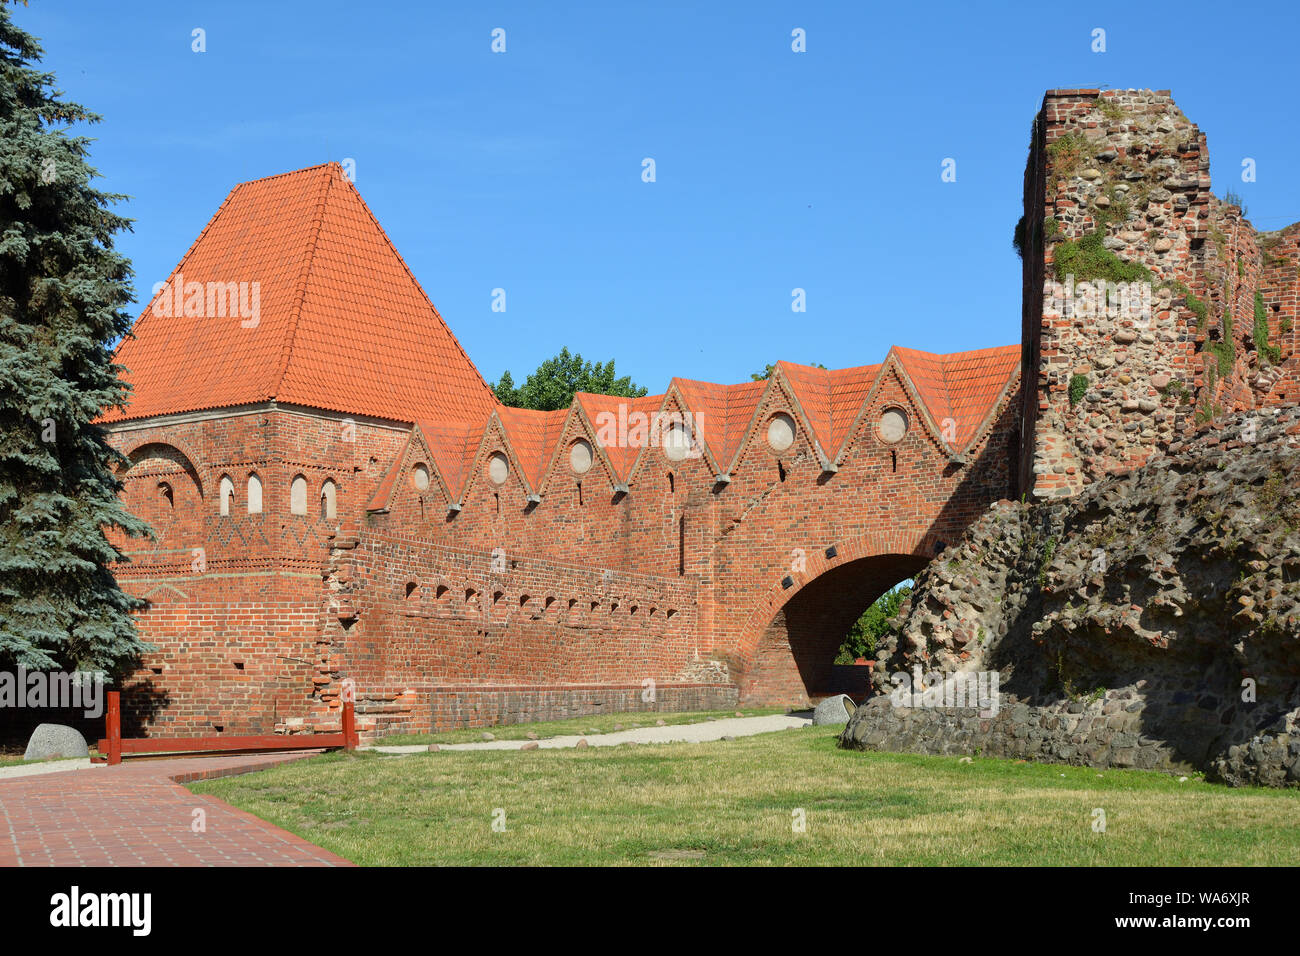 Château de Torun construit en 1260 par l'Ordre des Chevaliers teutoniques comme une forteresse - Pologne. Banque D'Images